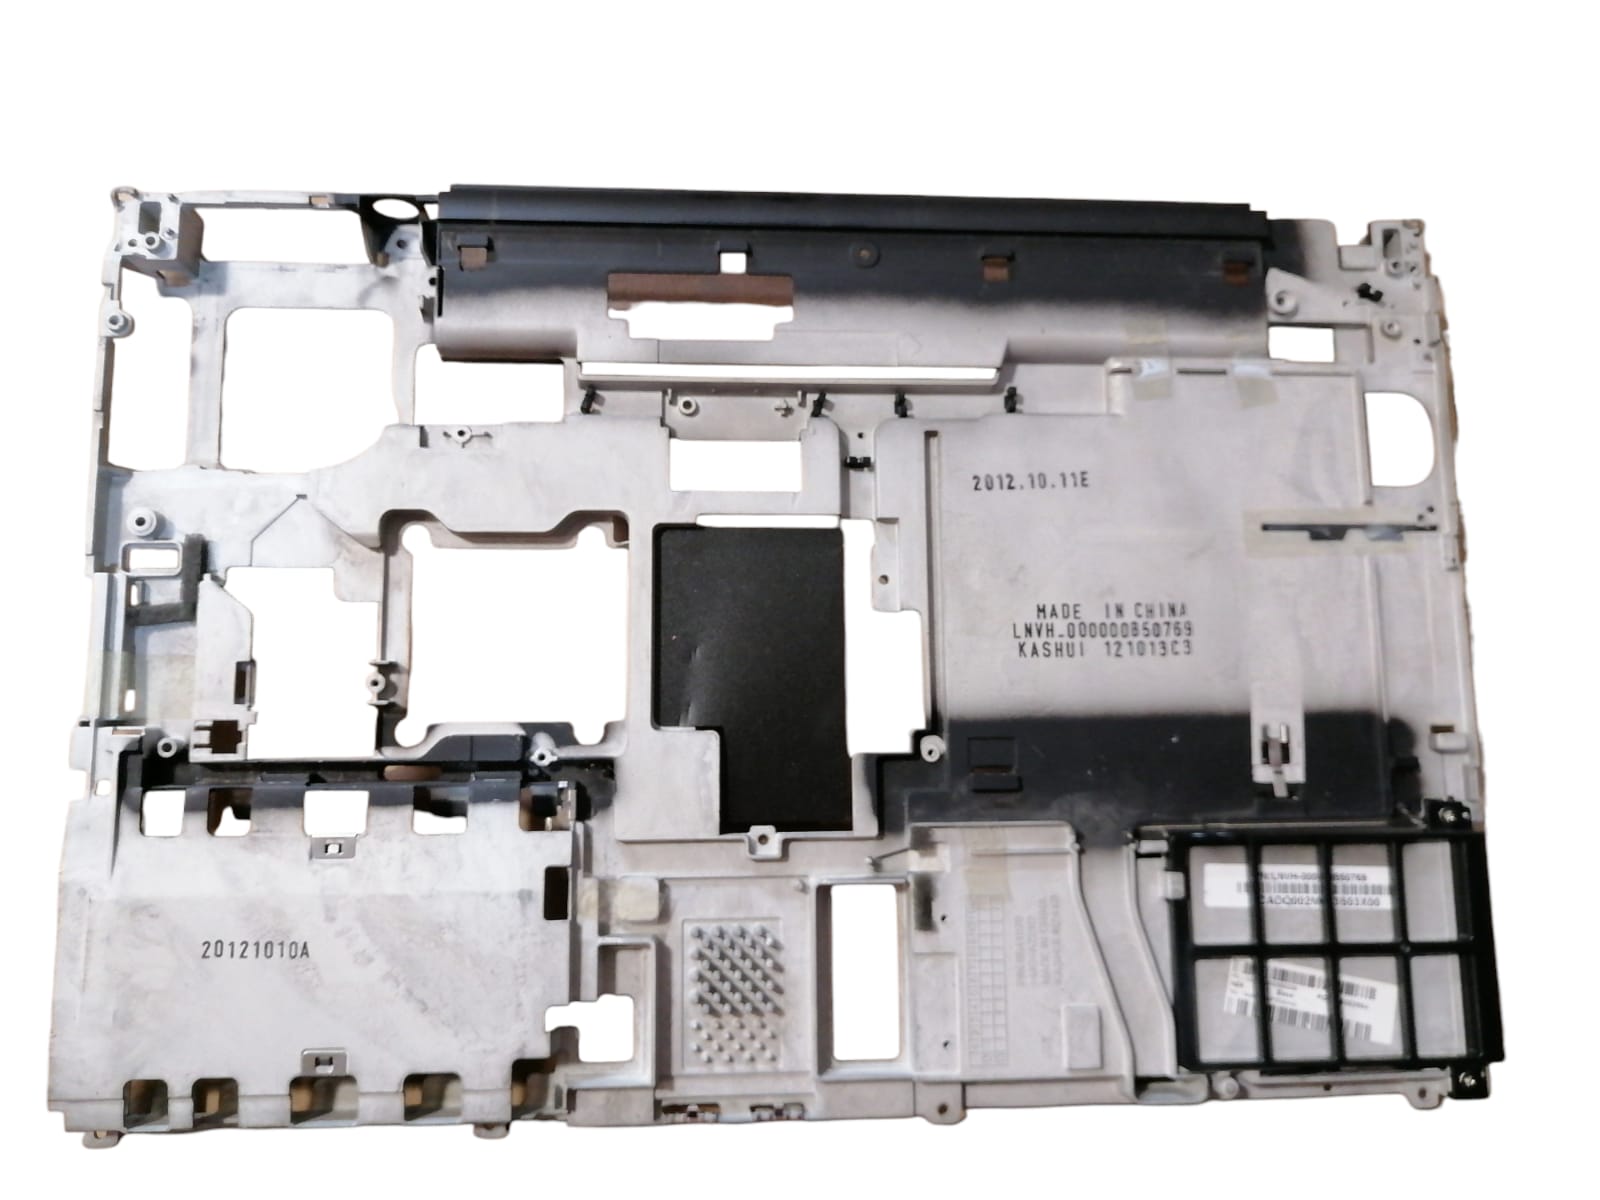 Marco de estuche de soporte base Lenovo T430